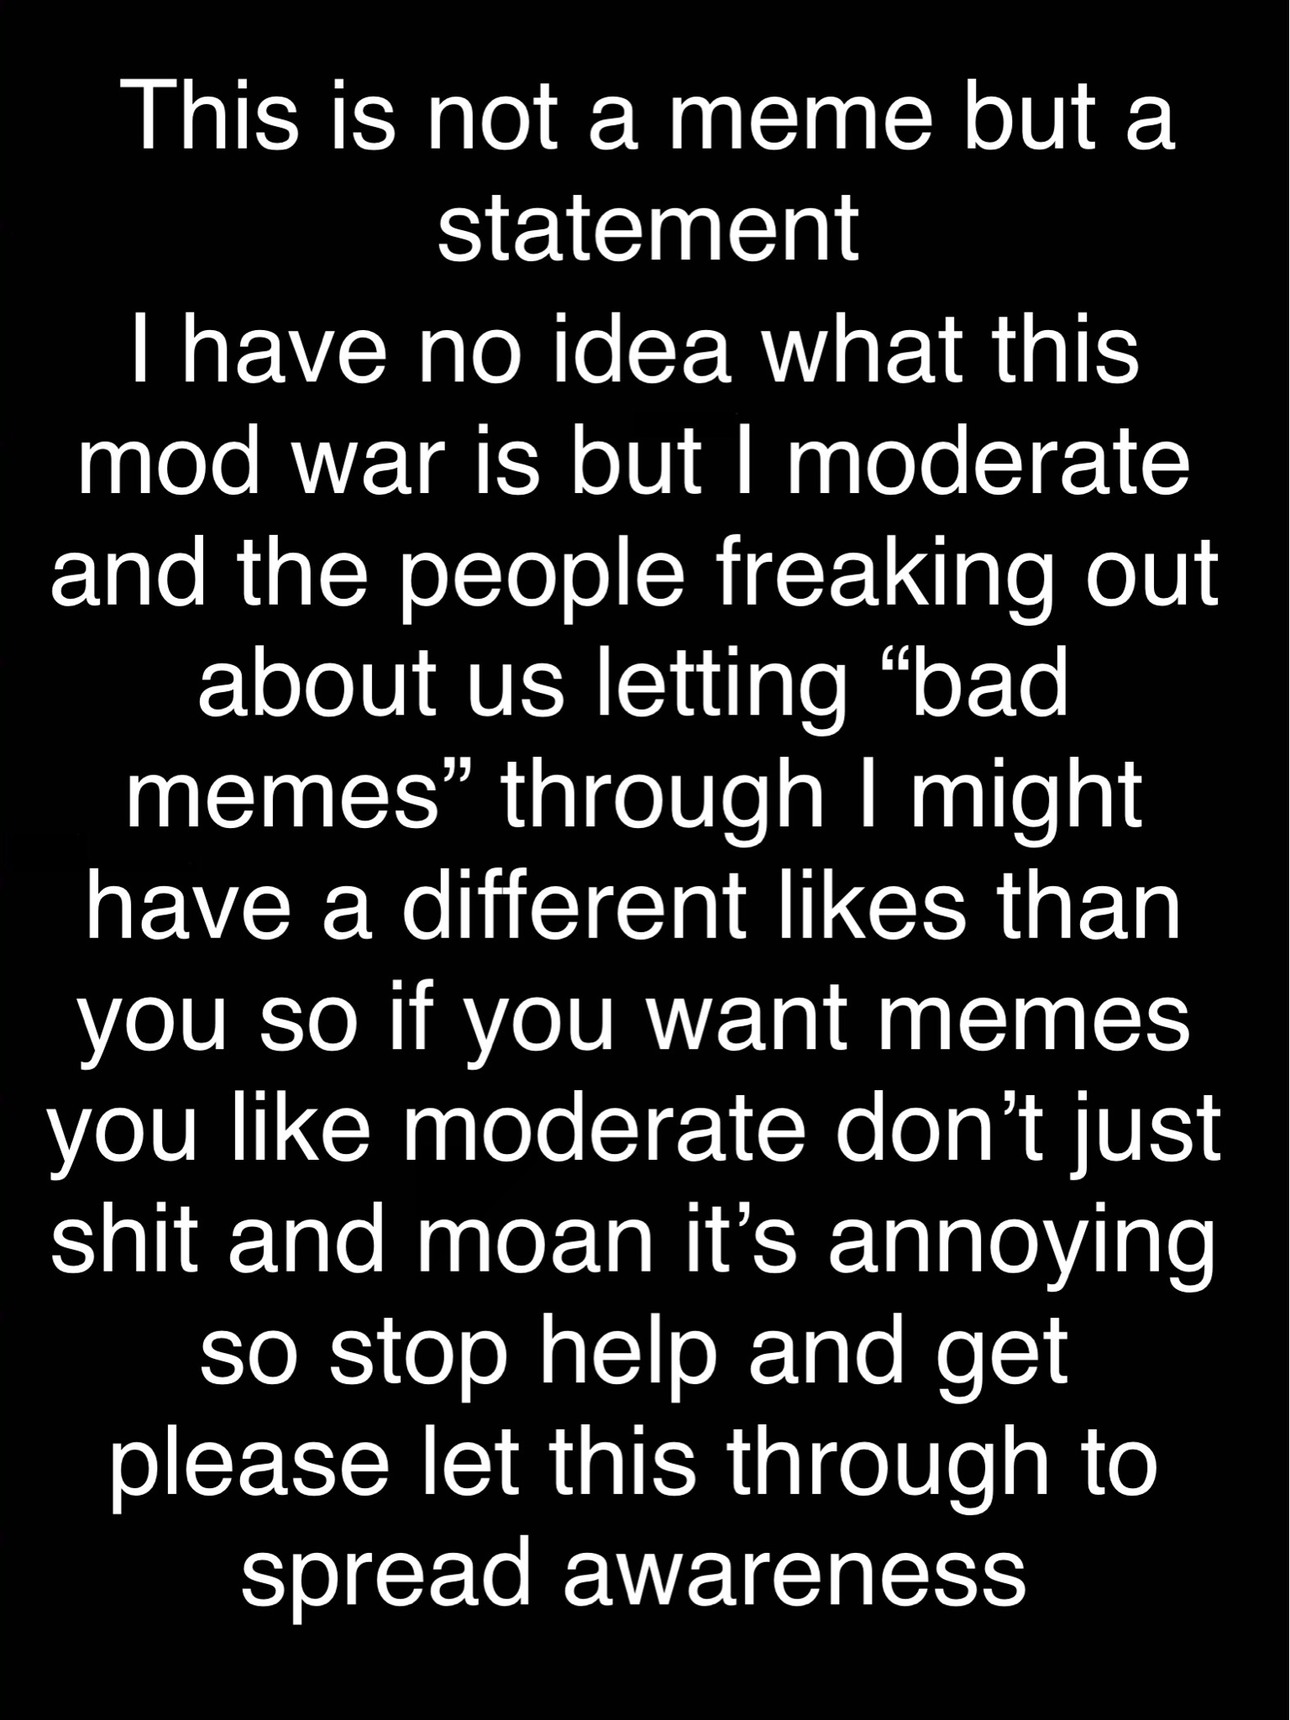 this mod war shit - meme